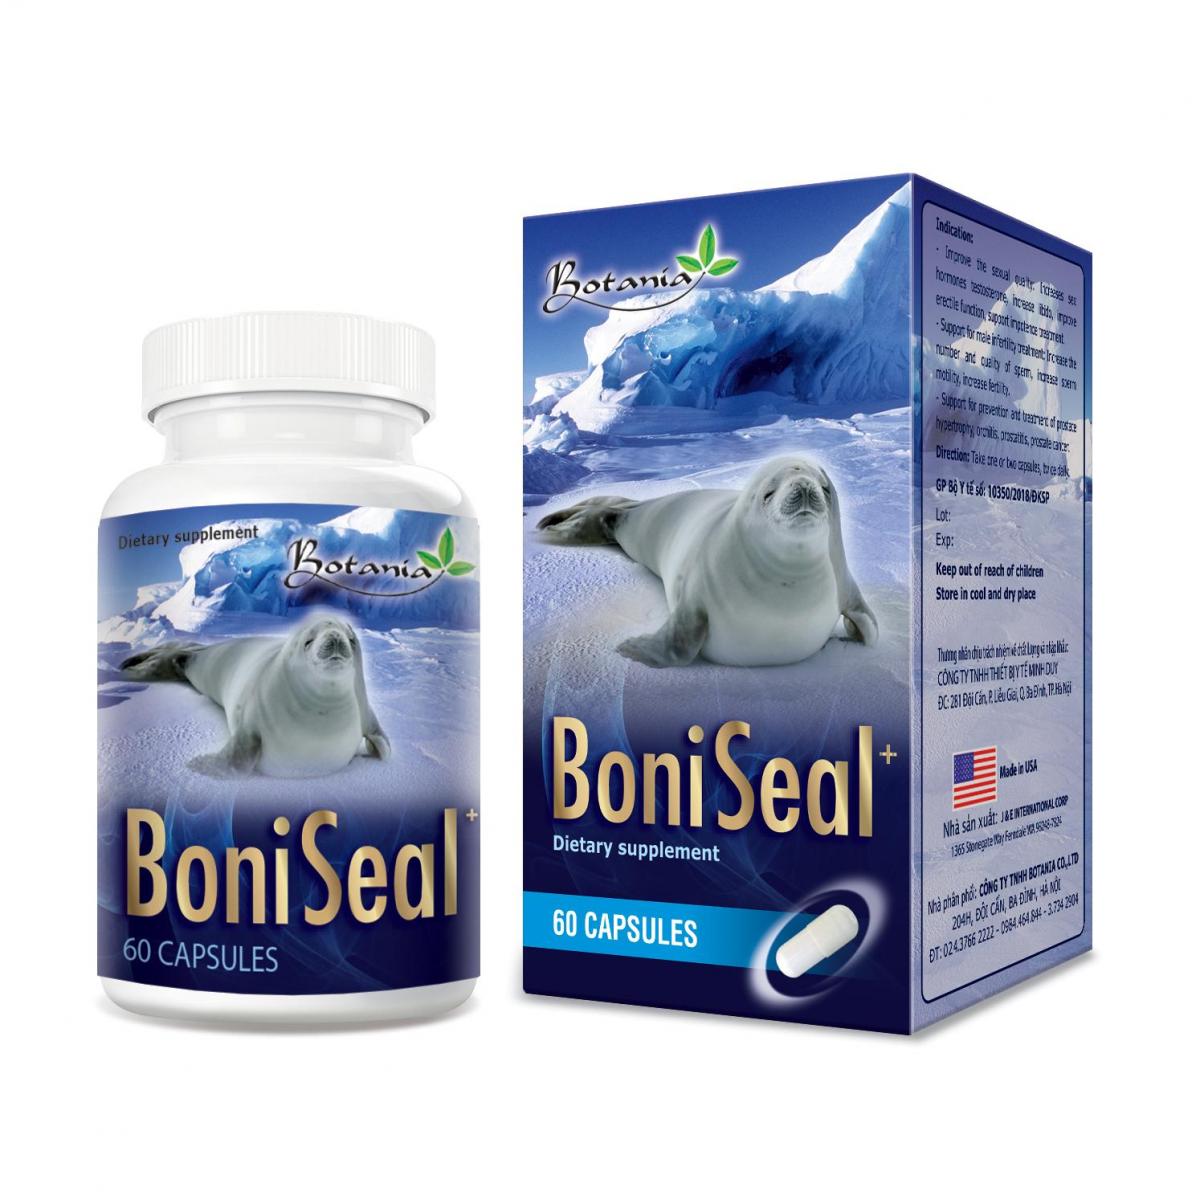 BoniSeal + - Giải pháp hoàn hảo cho nam giới rối loạn cương dương